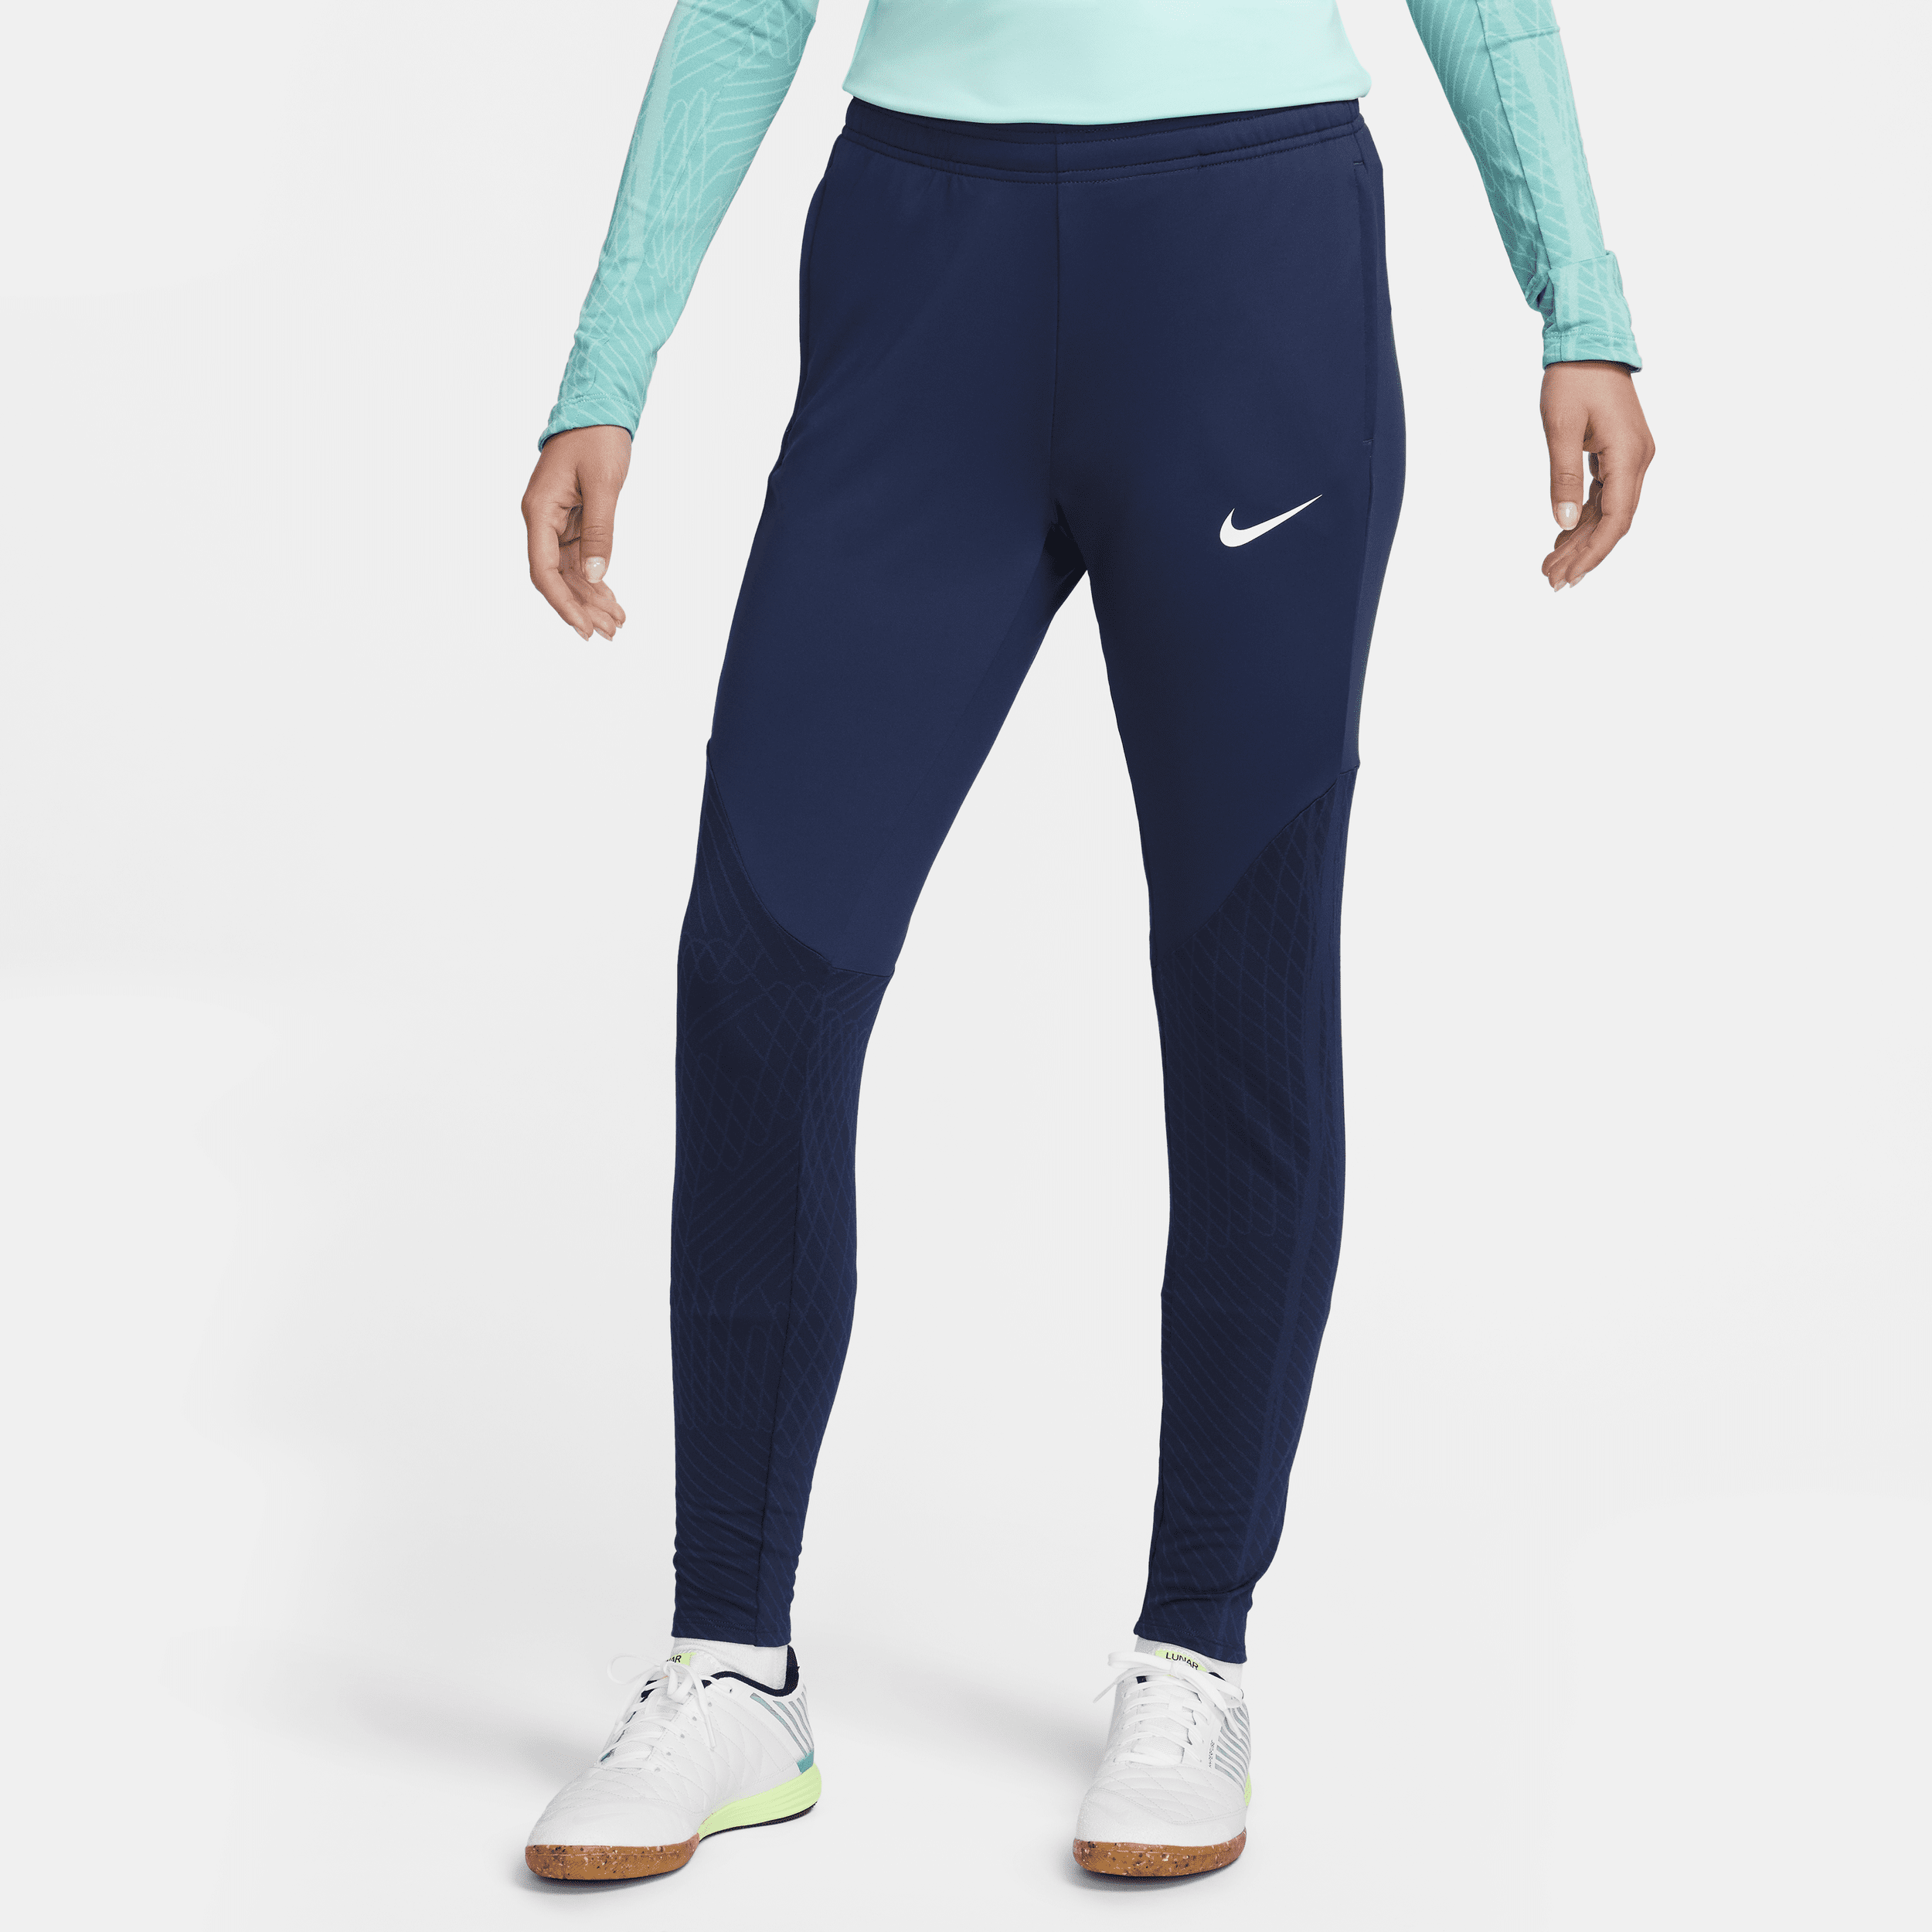 Nike Women's Dri-fit Strike Soccer Pants In Blue